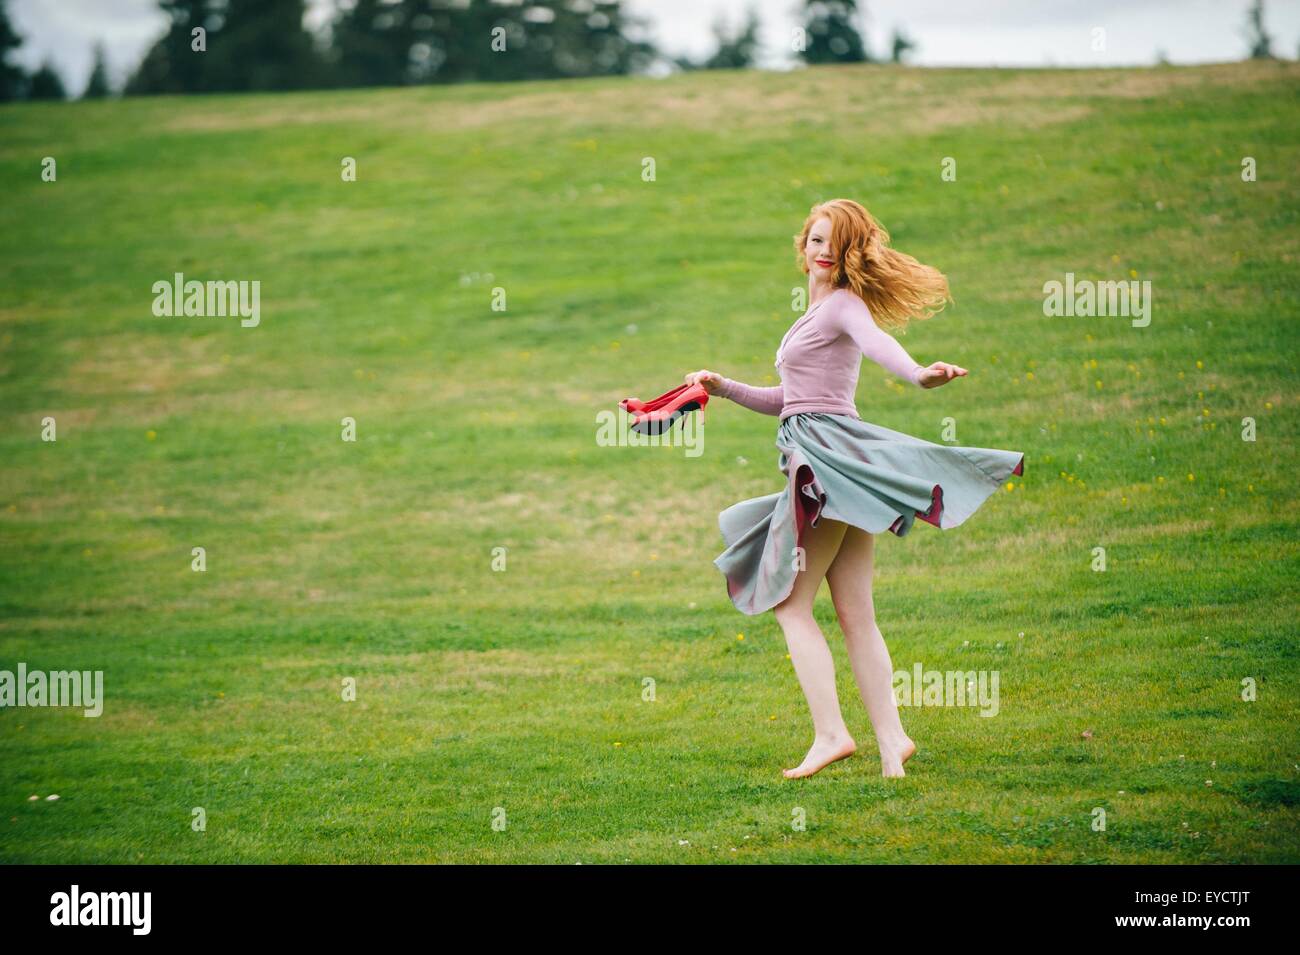 Porträt der jungen Frau tanzt im Park mit roten high heels Stockfoto